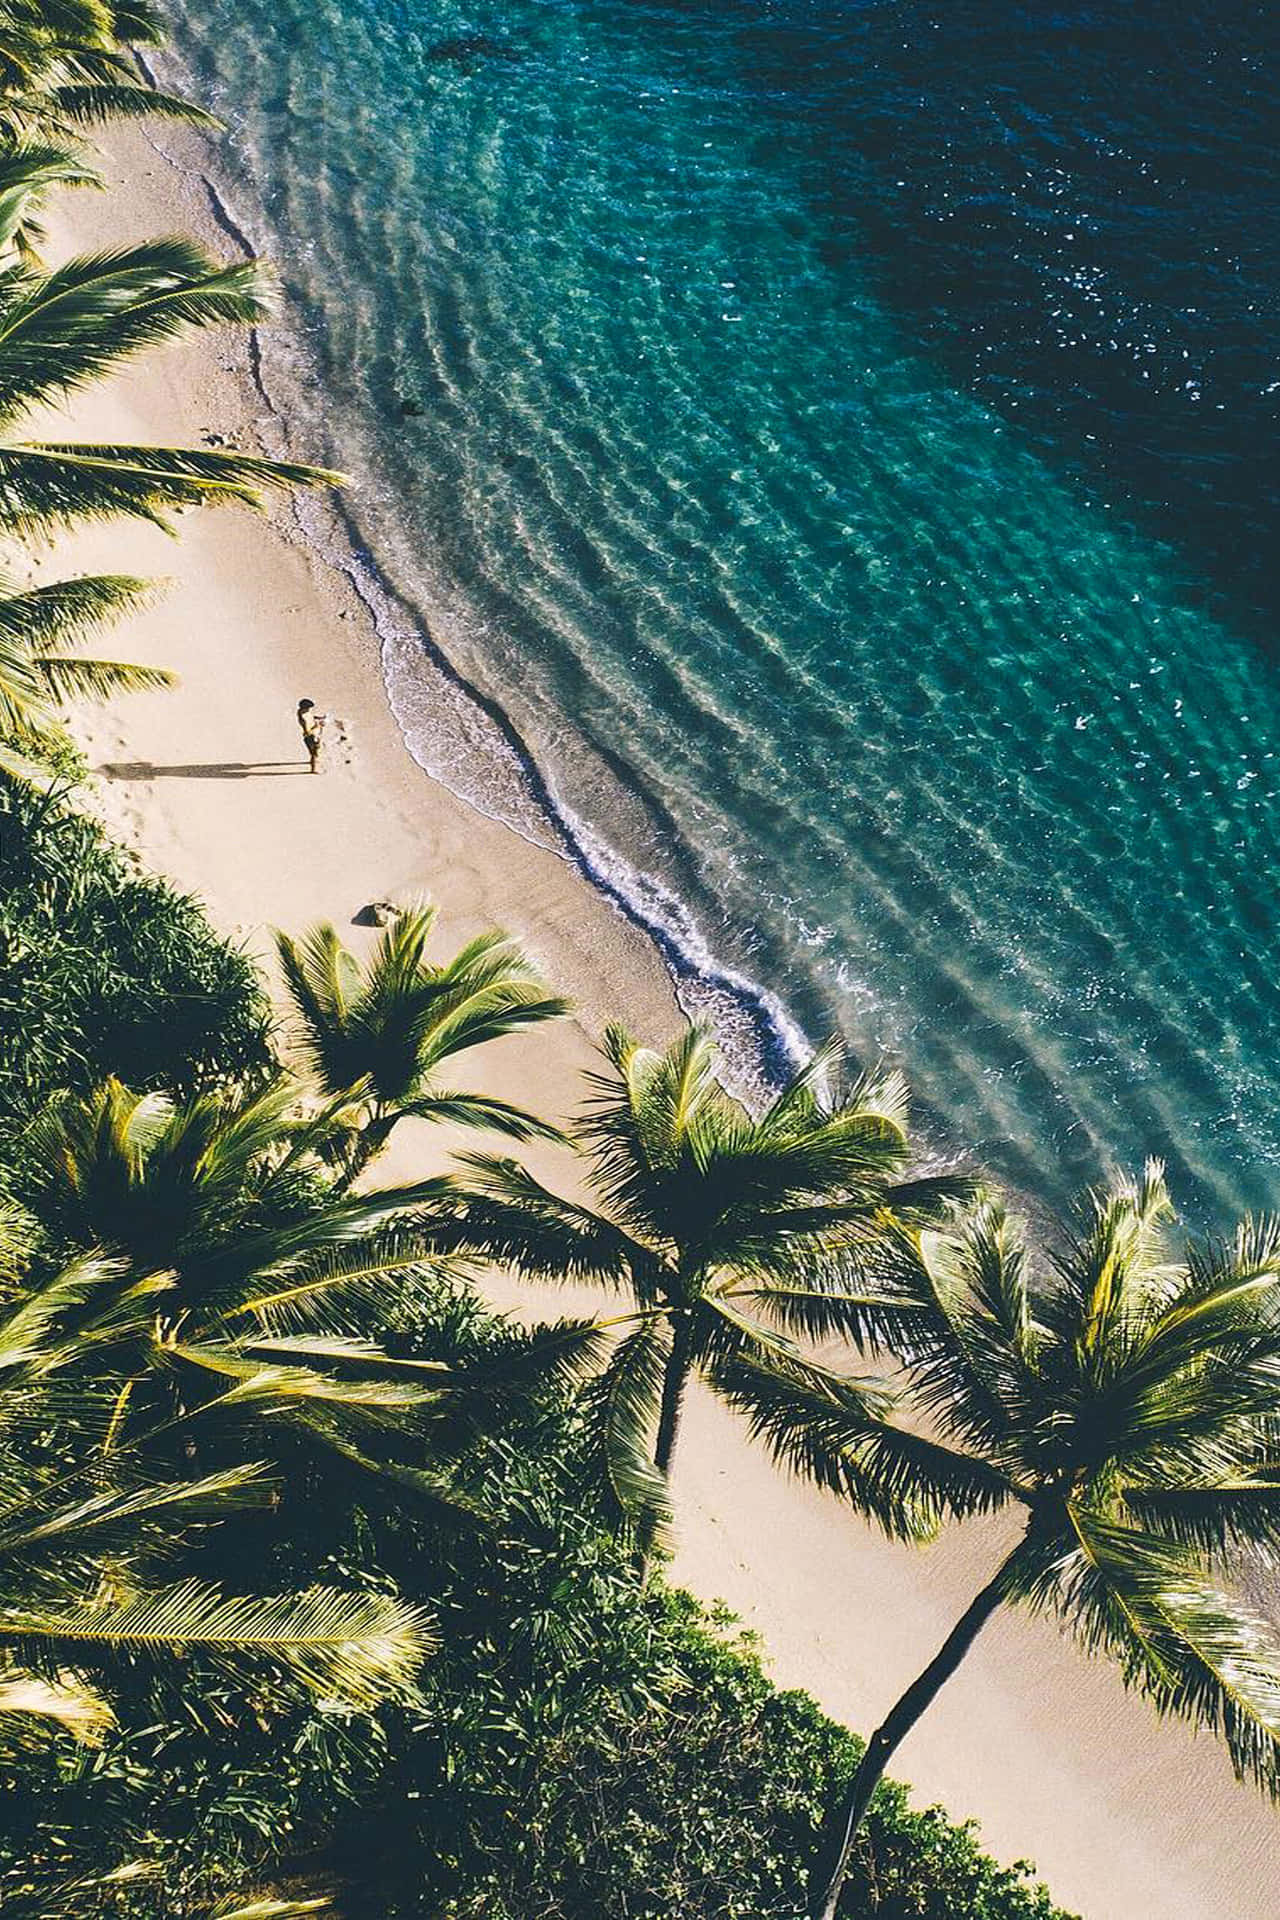 Vistaaerea Spiaggia Delle Palme In Hawaii, Dal Punto Di Vista Estetico. Sfondo